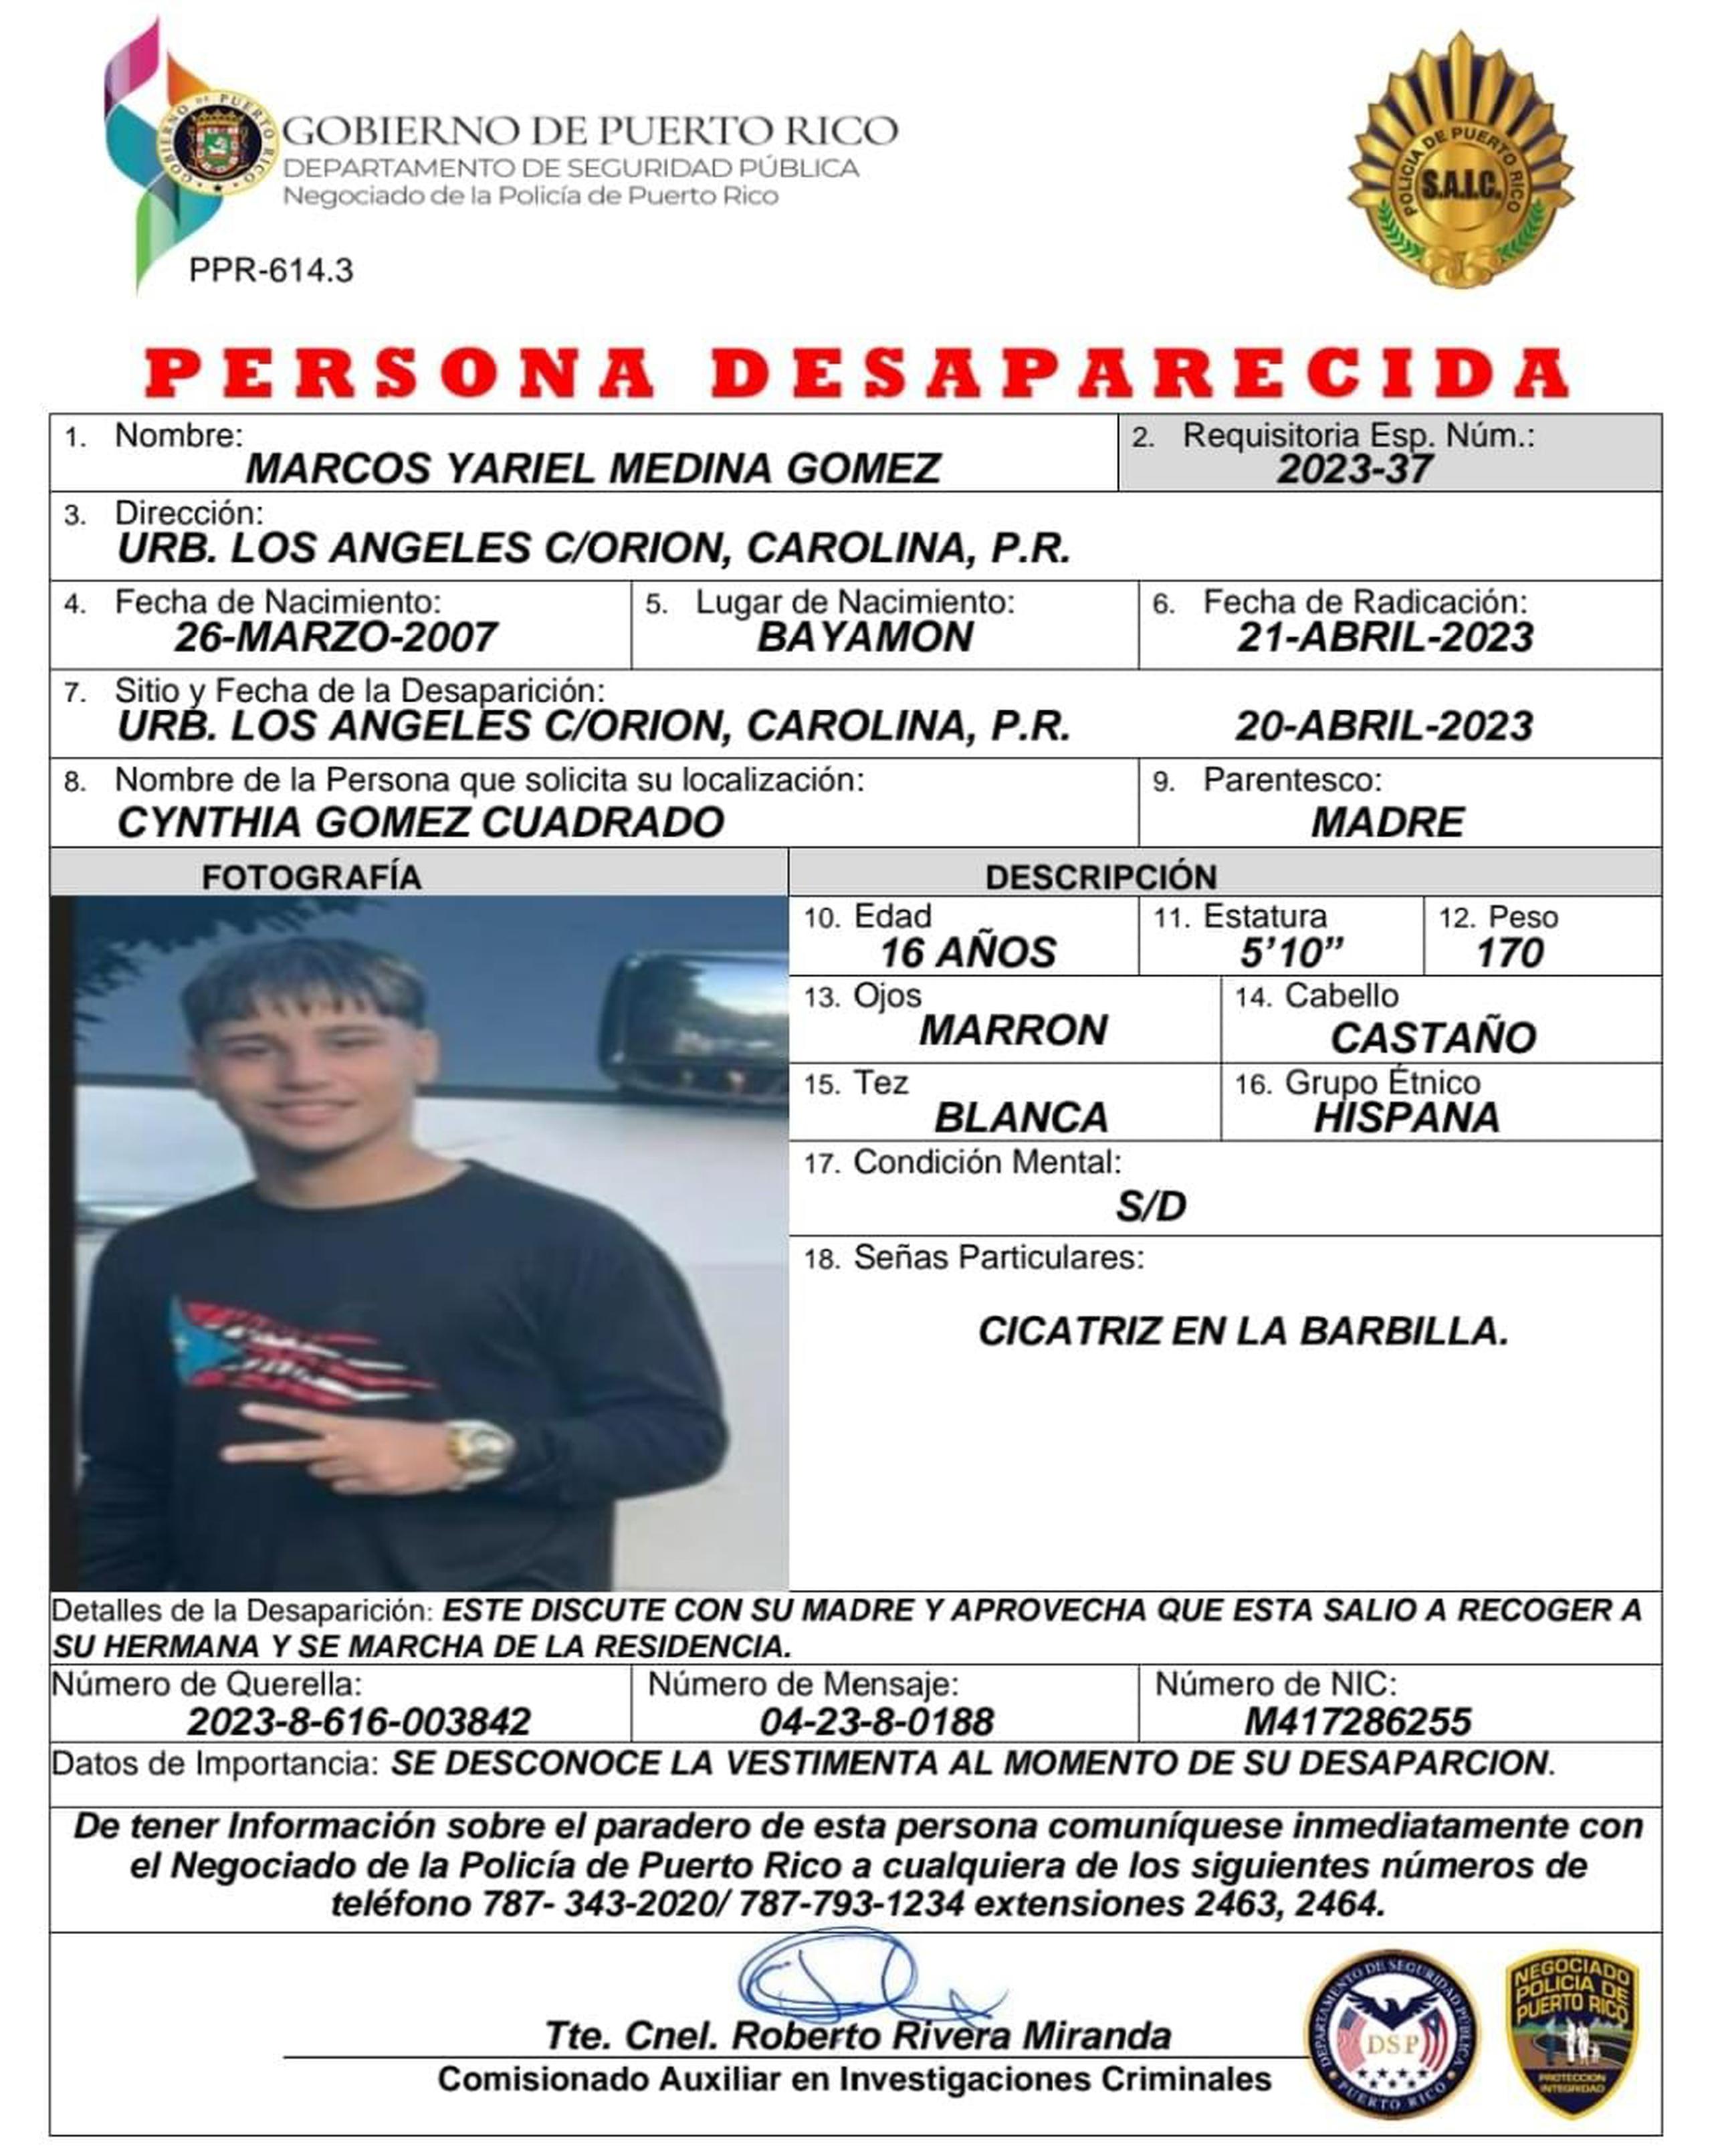 Marcos Yariel Medina Gómez, de 16 años, fue reportado desaparecido por su progenitora. Si lo ha visto llame a la línea confidencial del Negociado de la Policía al (787) 343-2020. 